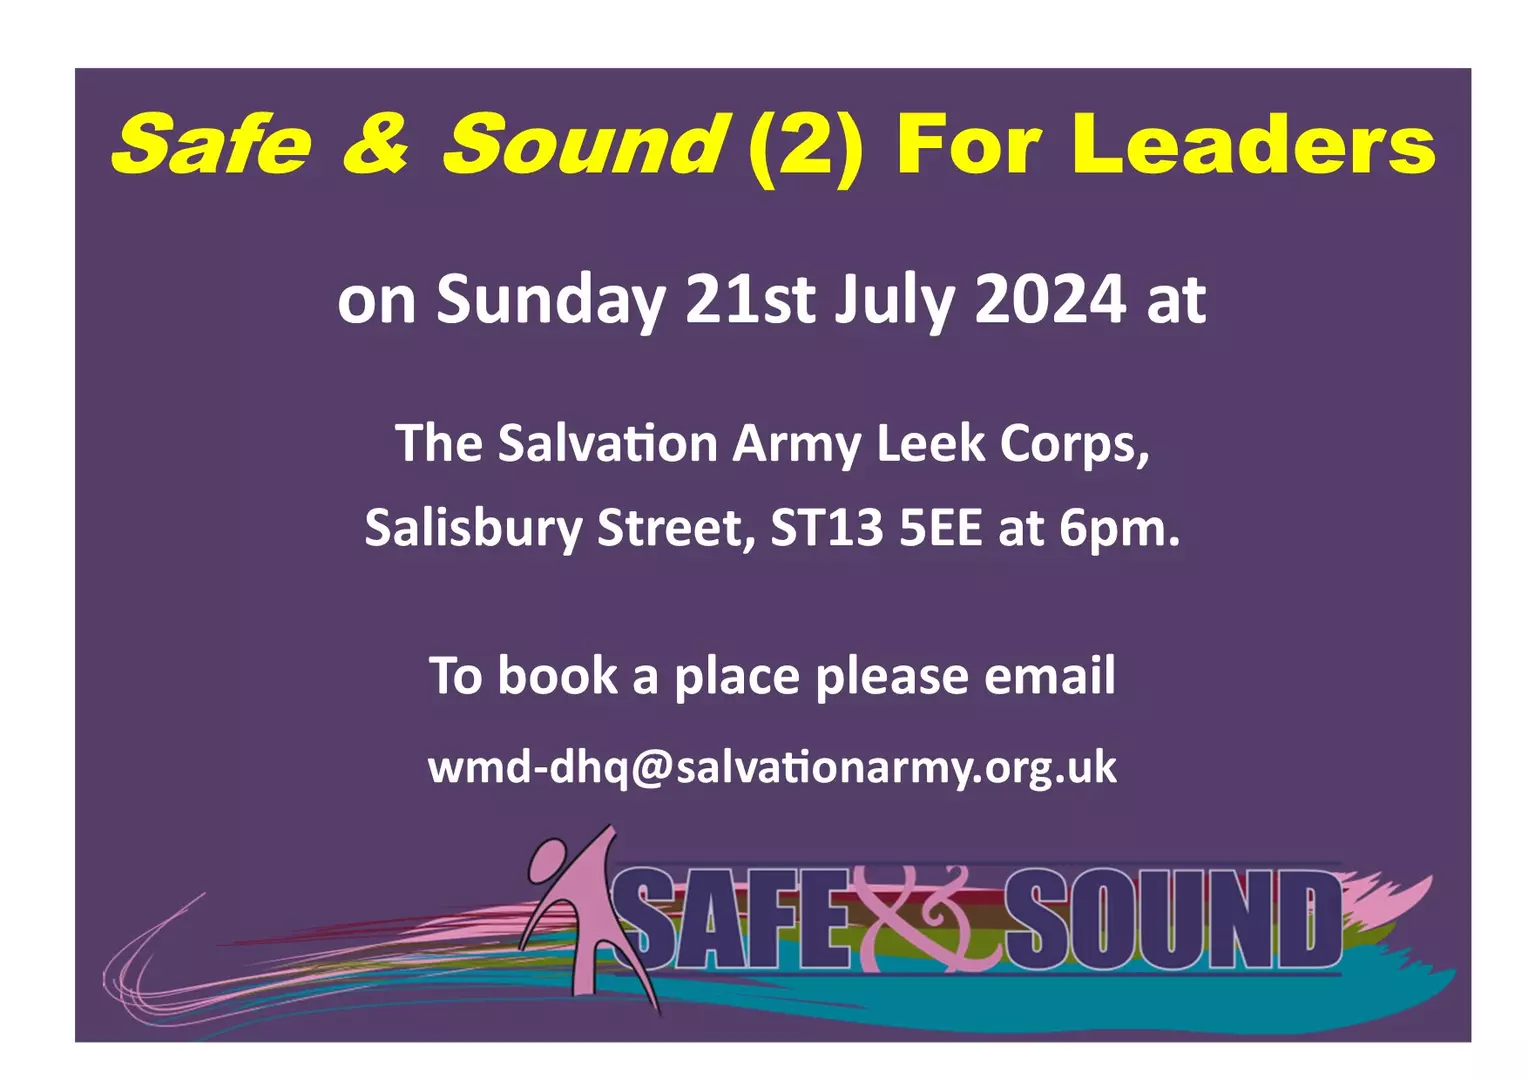 Safe & Sound 2 For Leaders